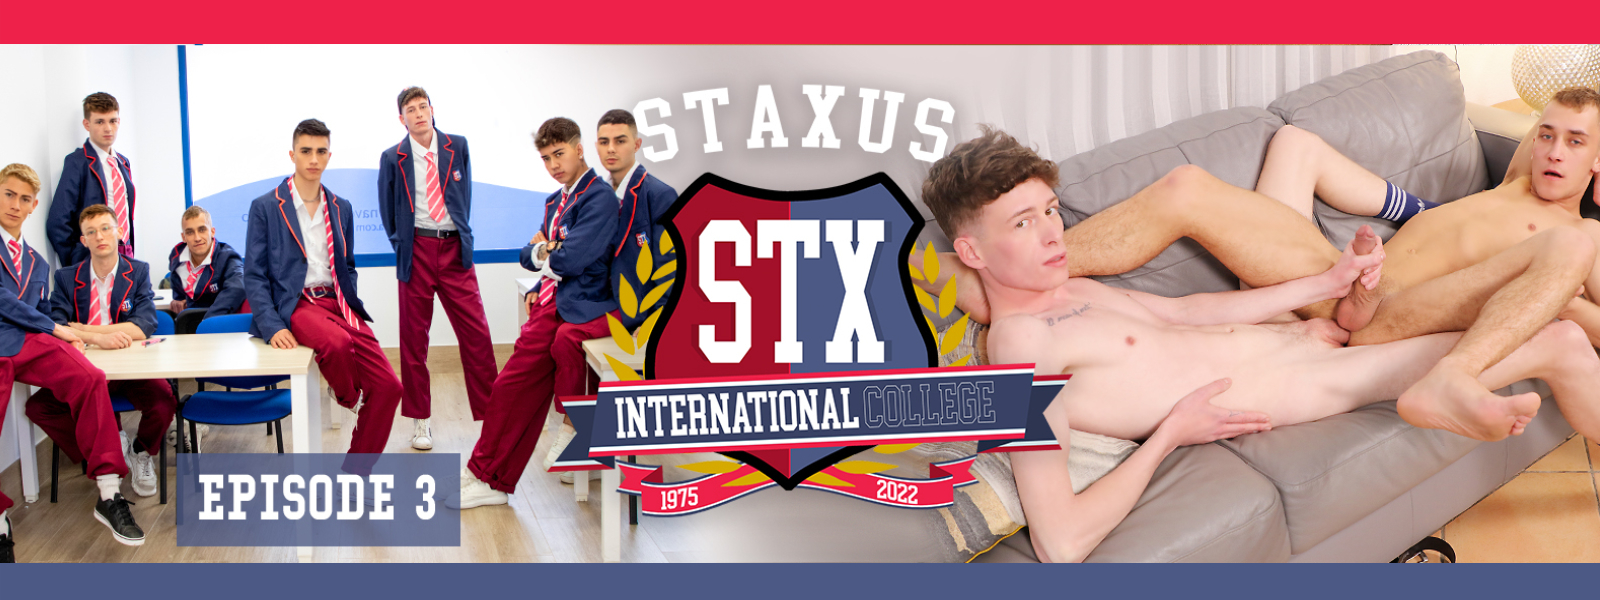 Staxus International College Episode 3